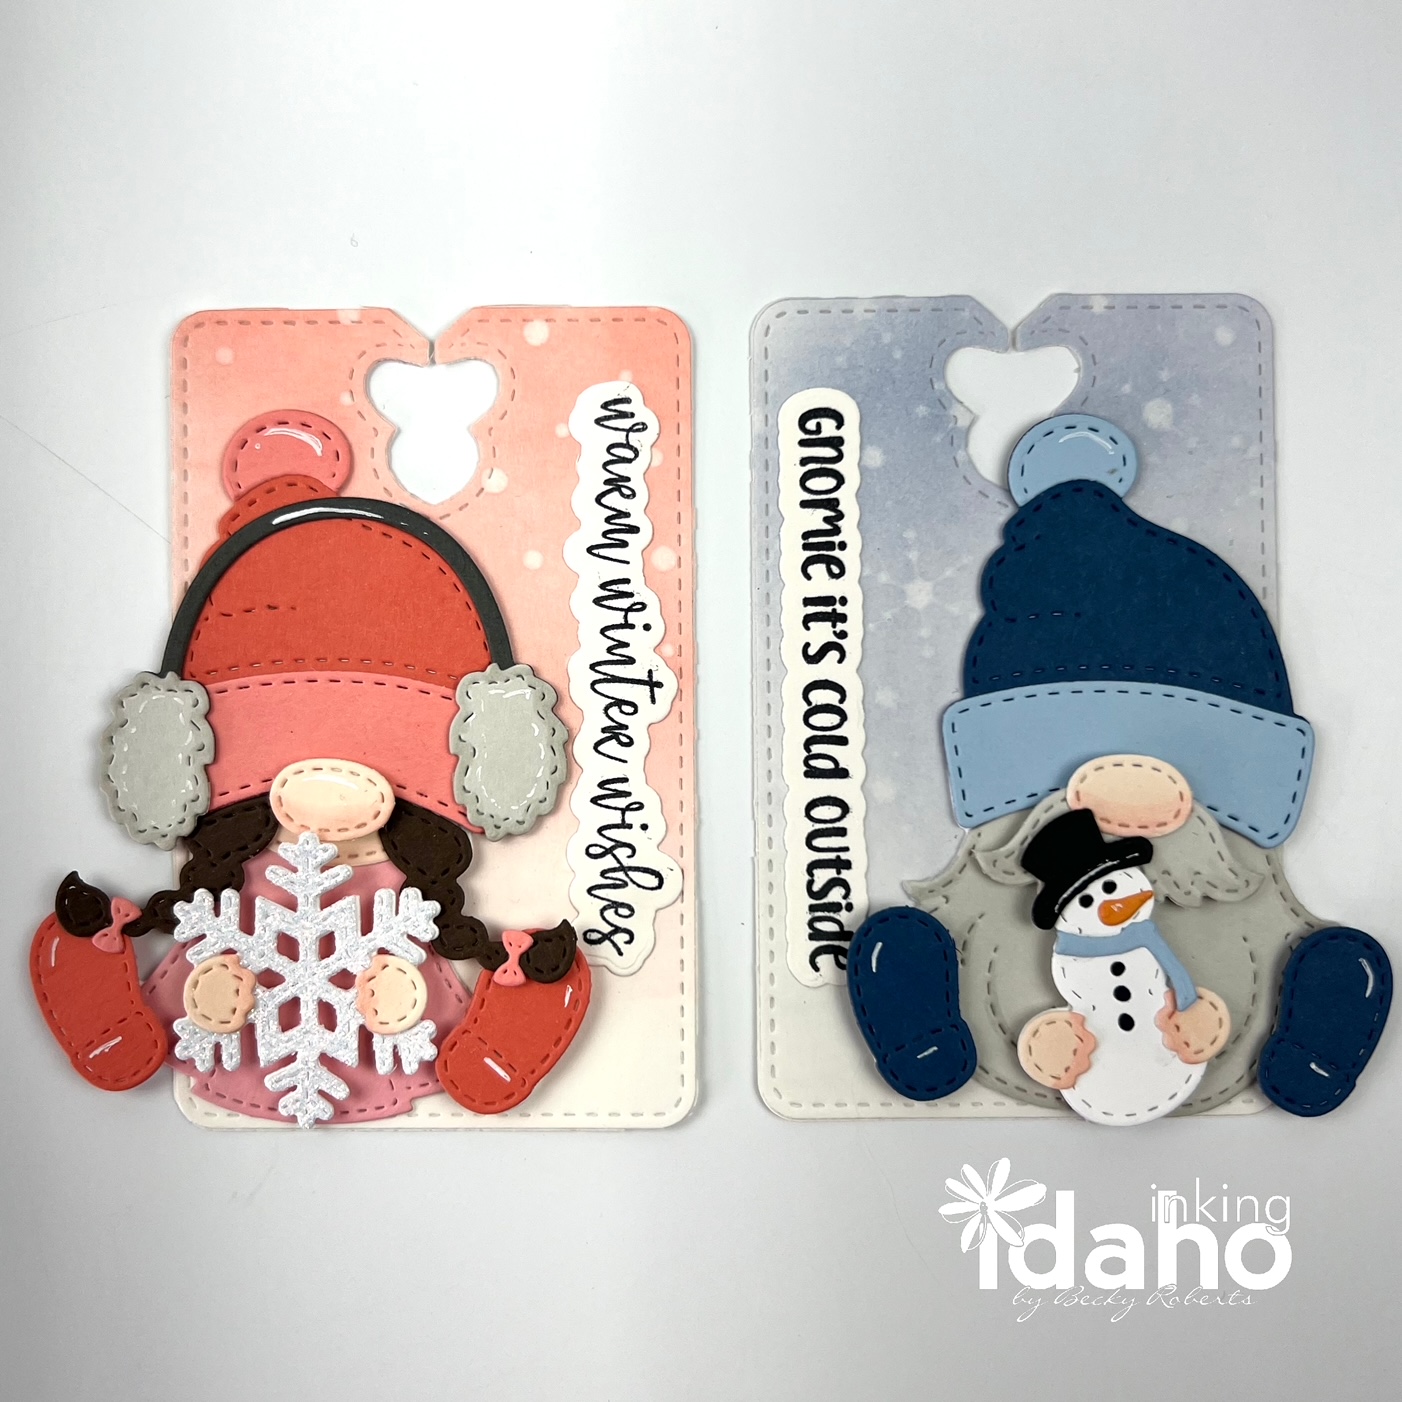 Inking Idaho: Gift Card Mini Pocket Book